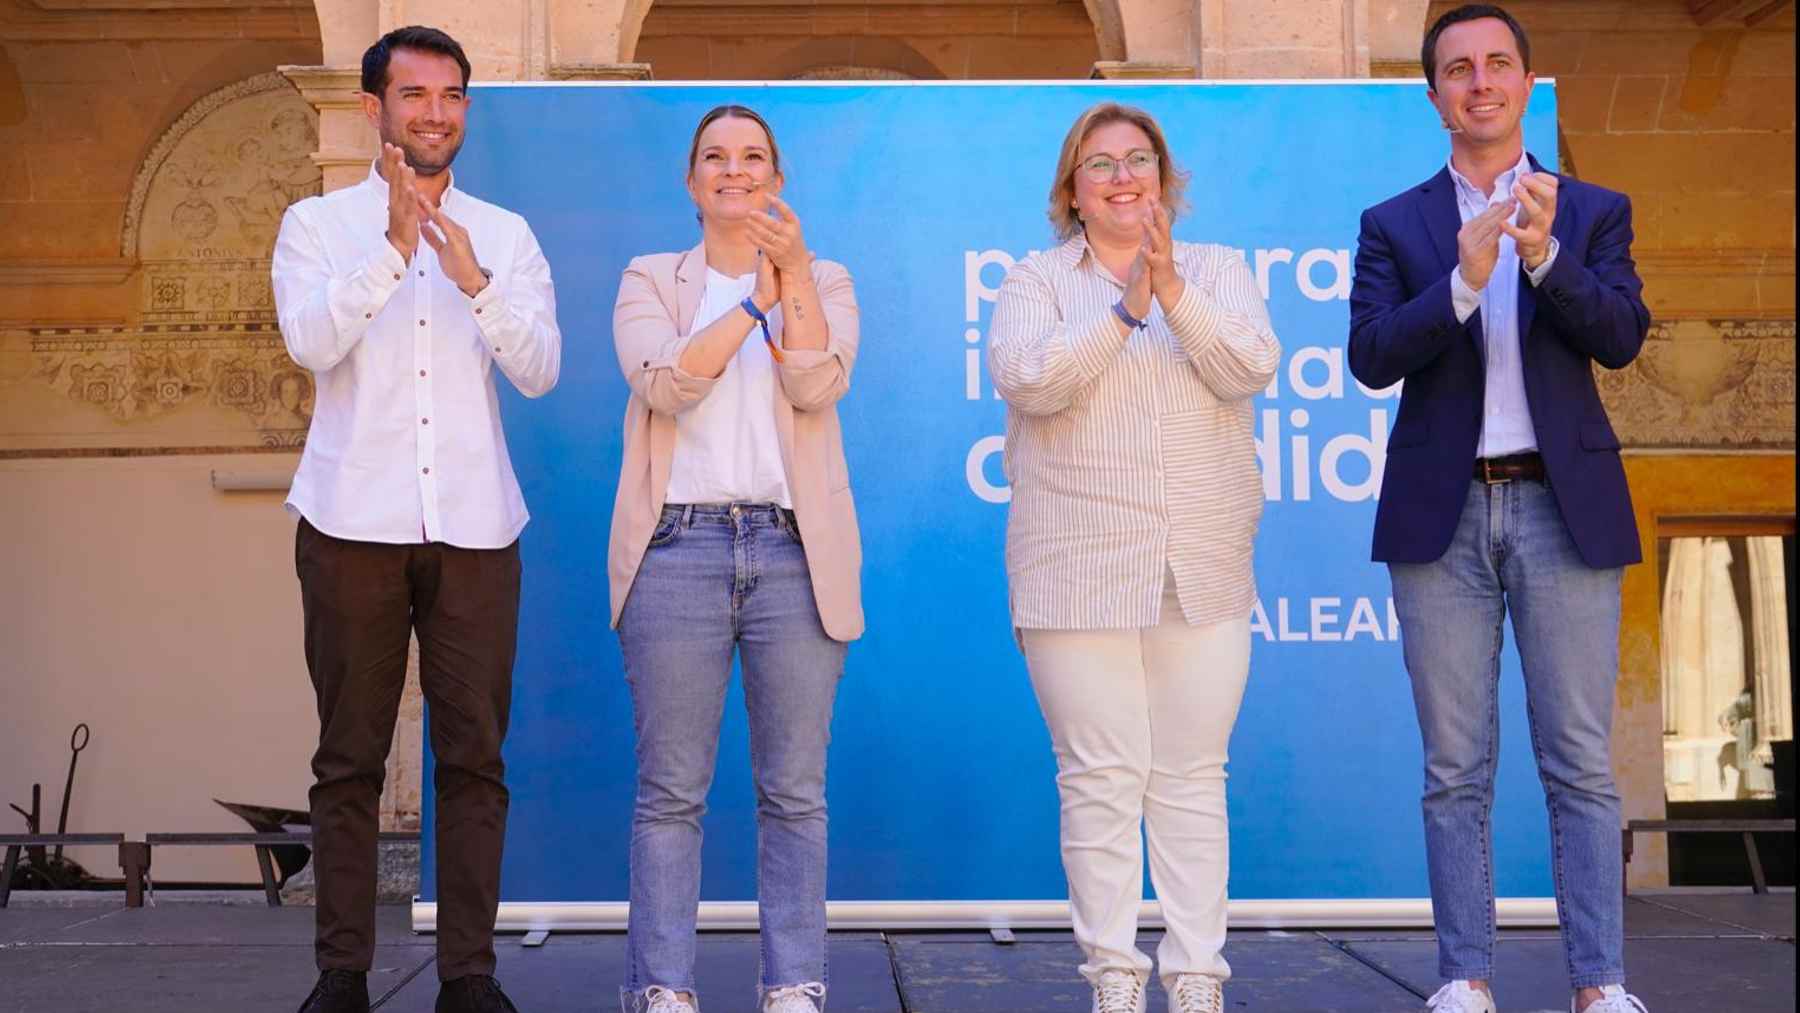 La presidenta del PP balear, Marga Prohens, en un acto de su partido en Llucmajor ( Mallorca).